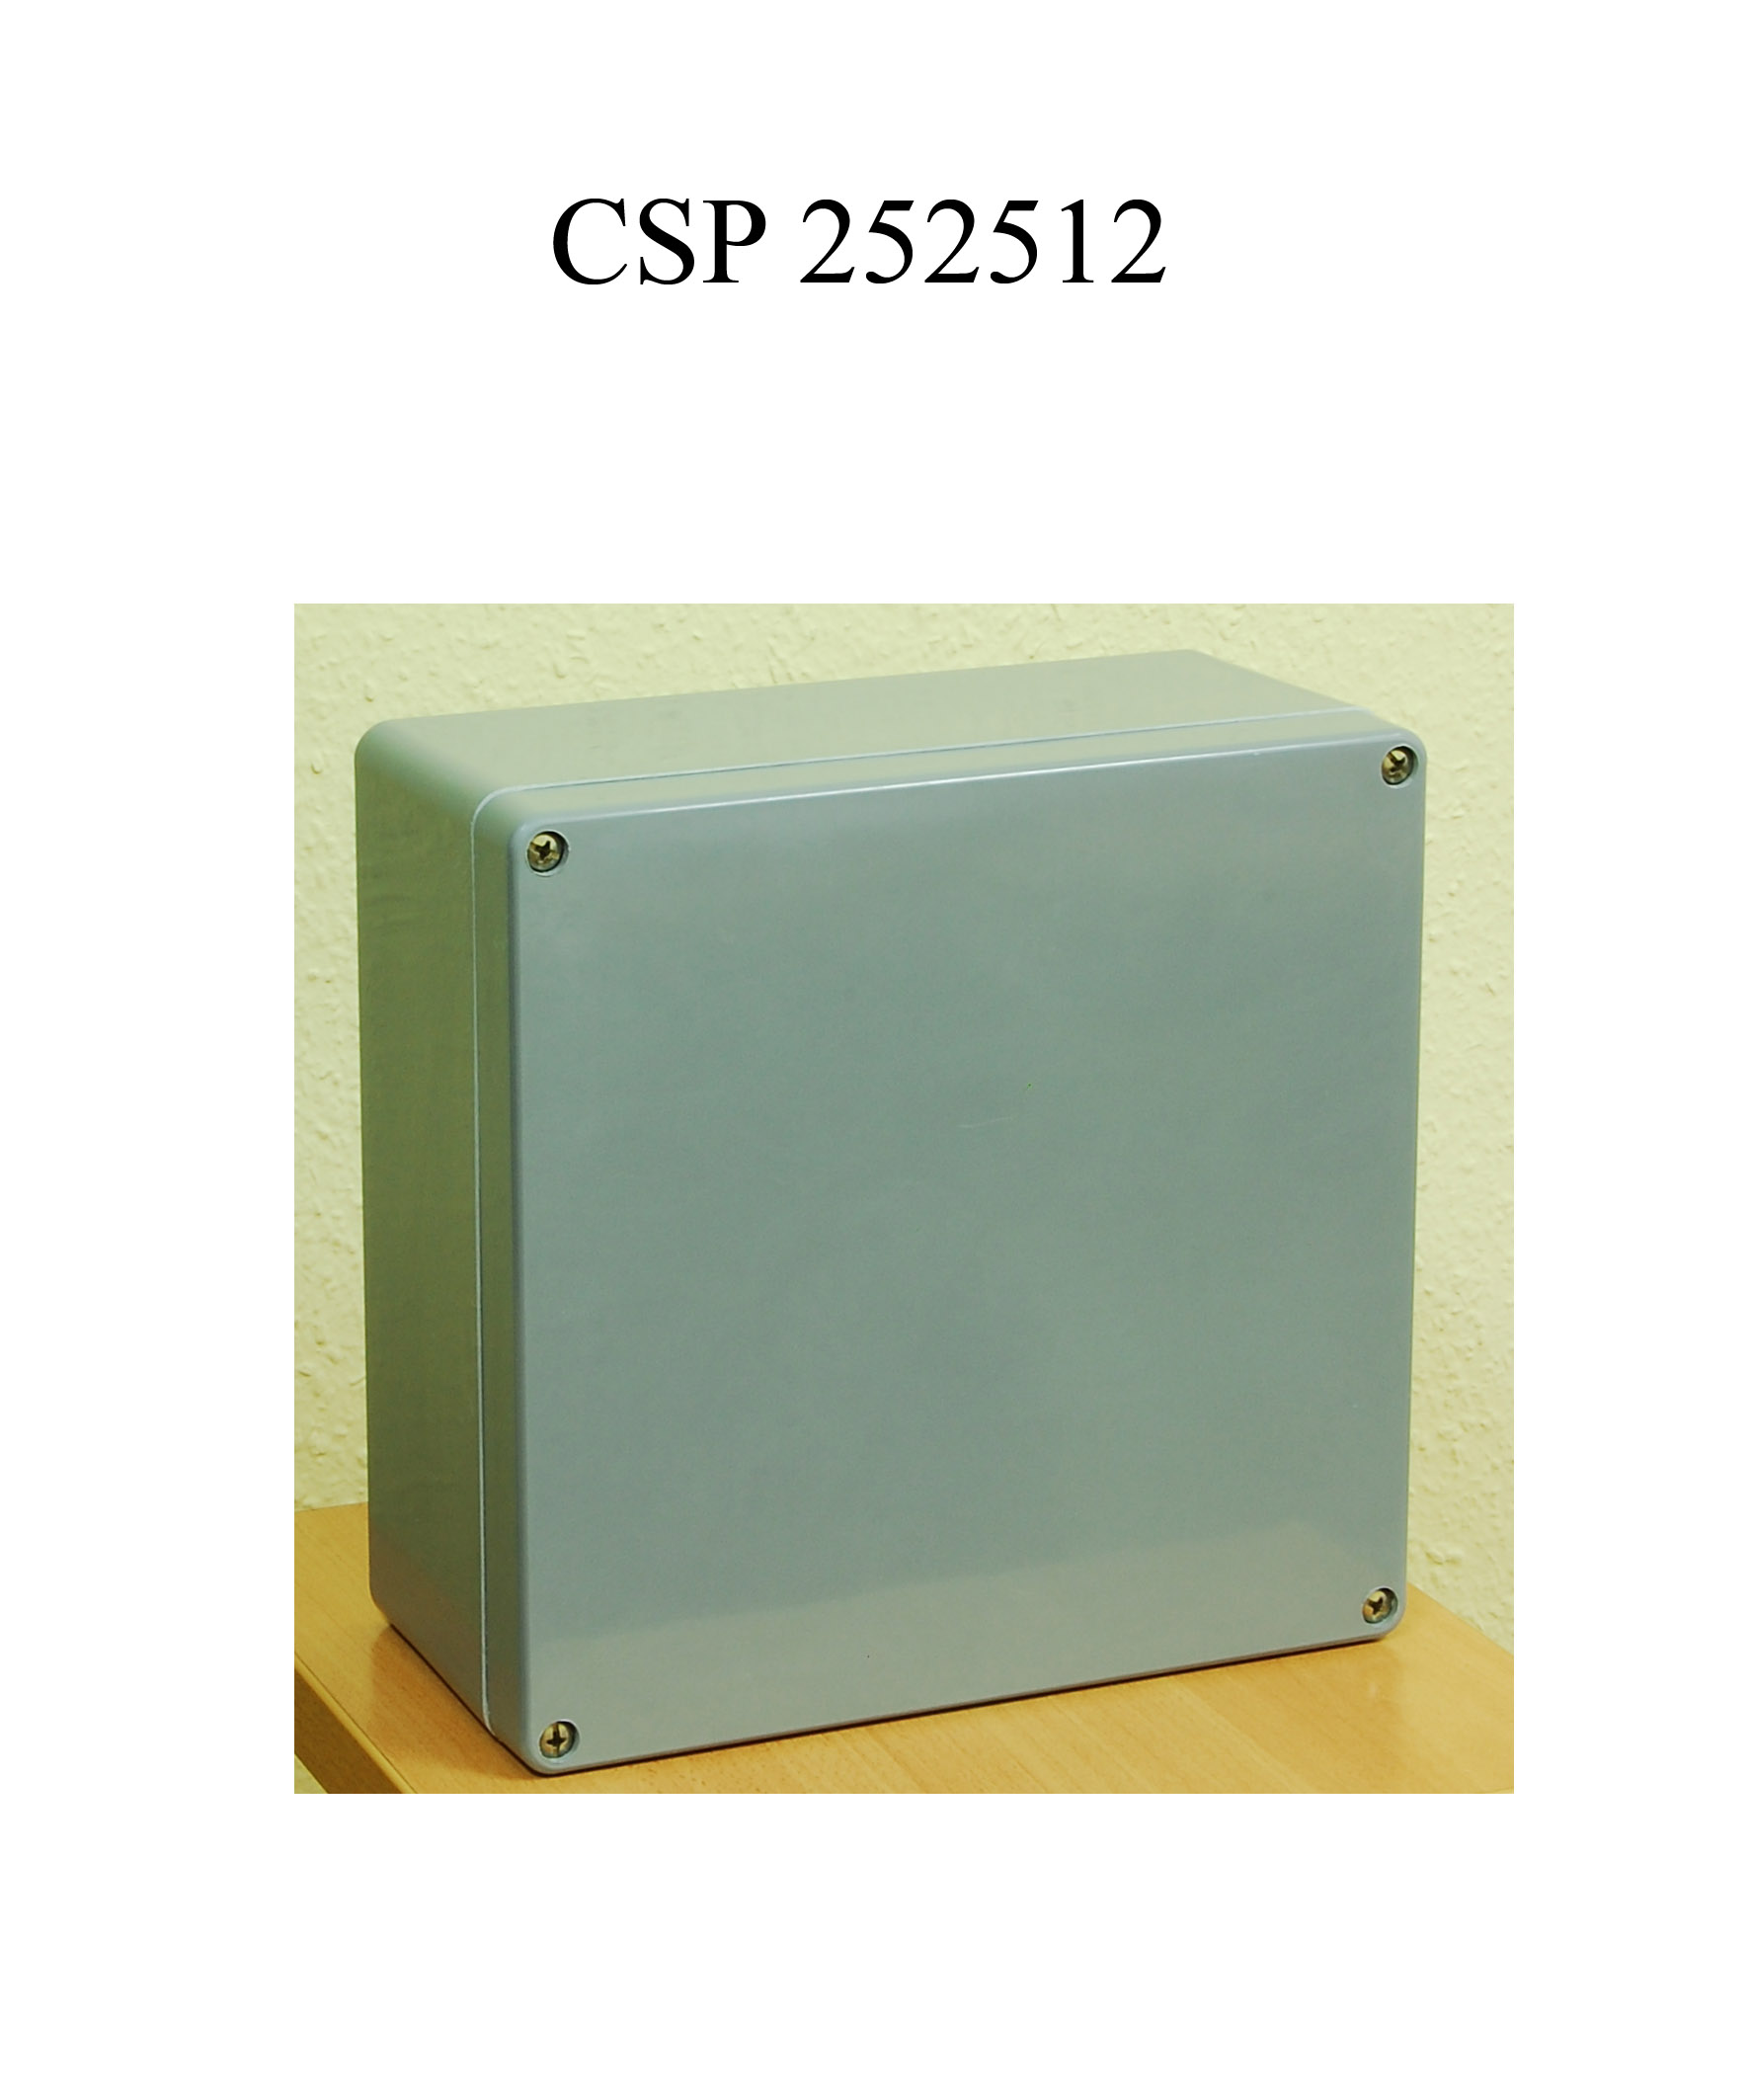 CSP 252512 poliészter doboz fekete üres